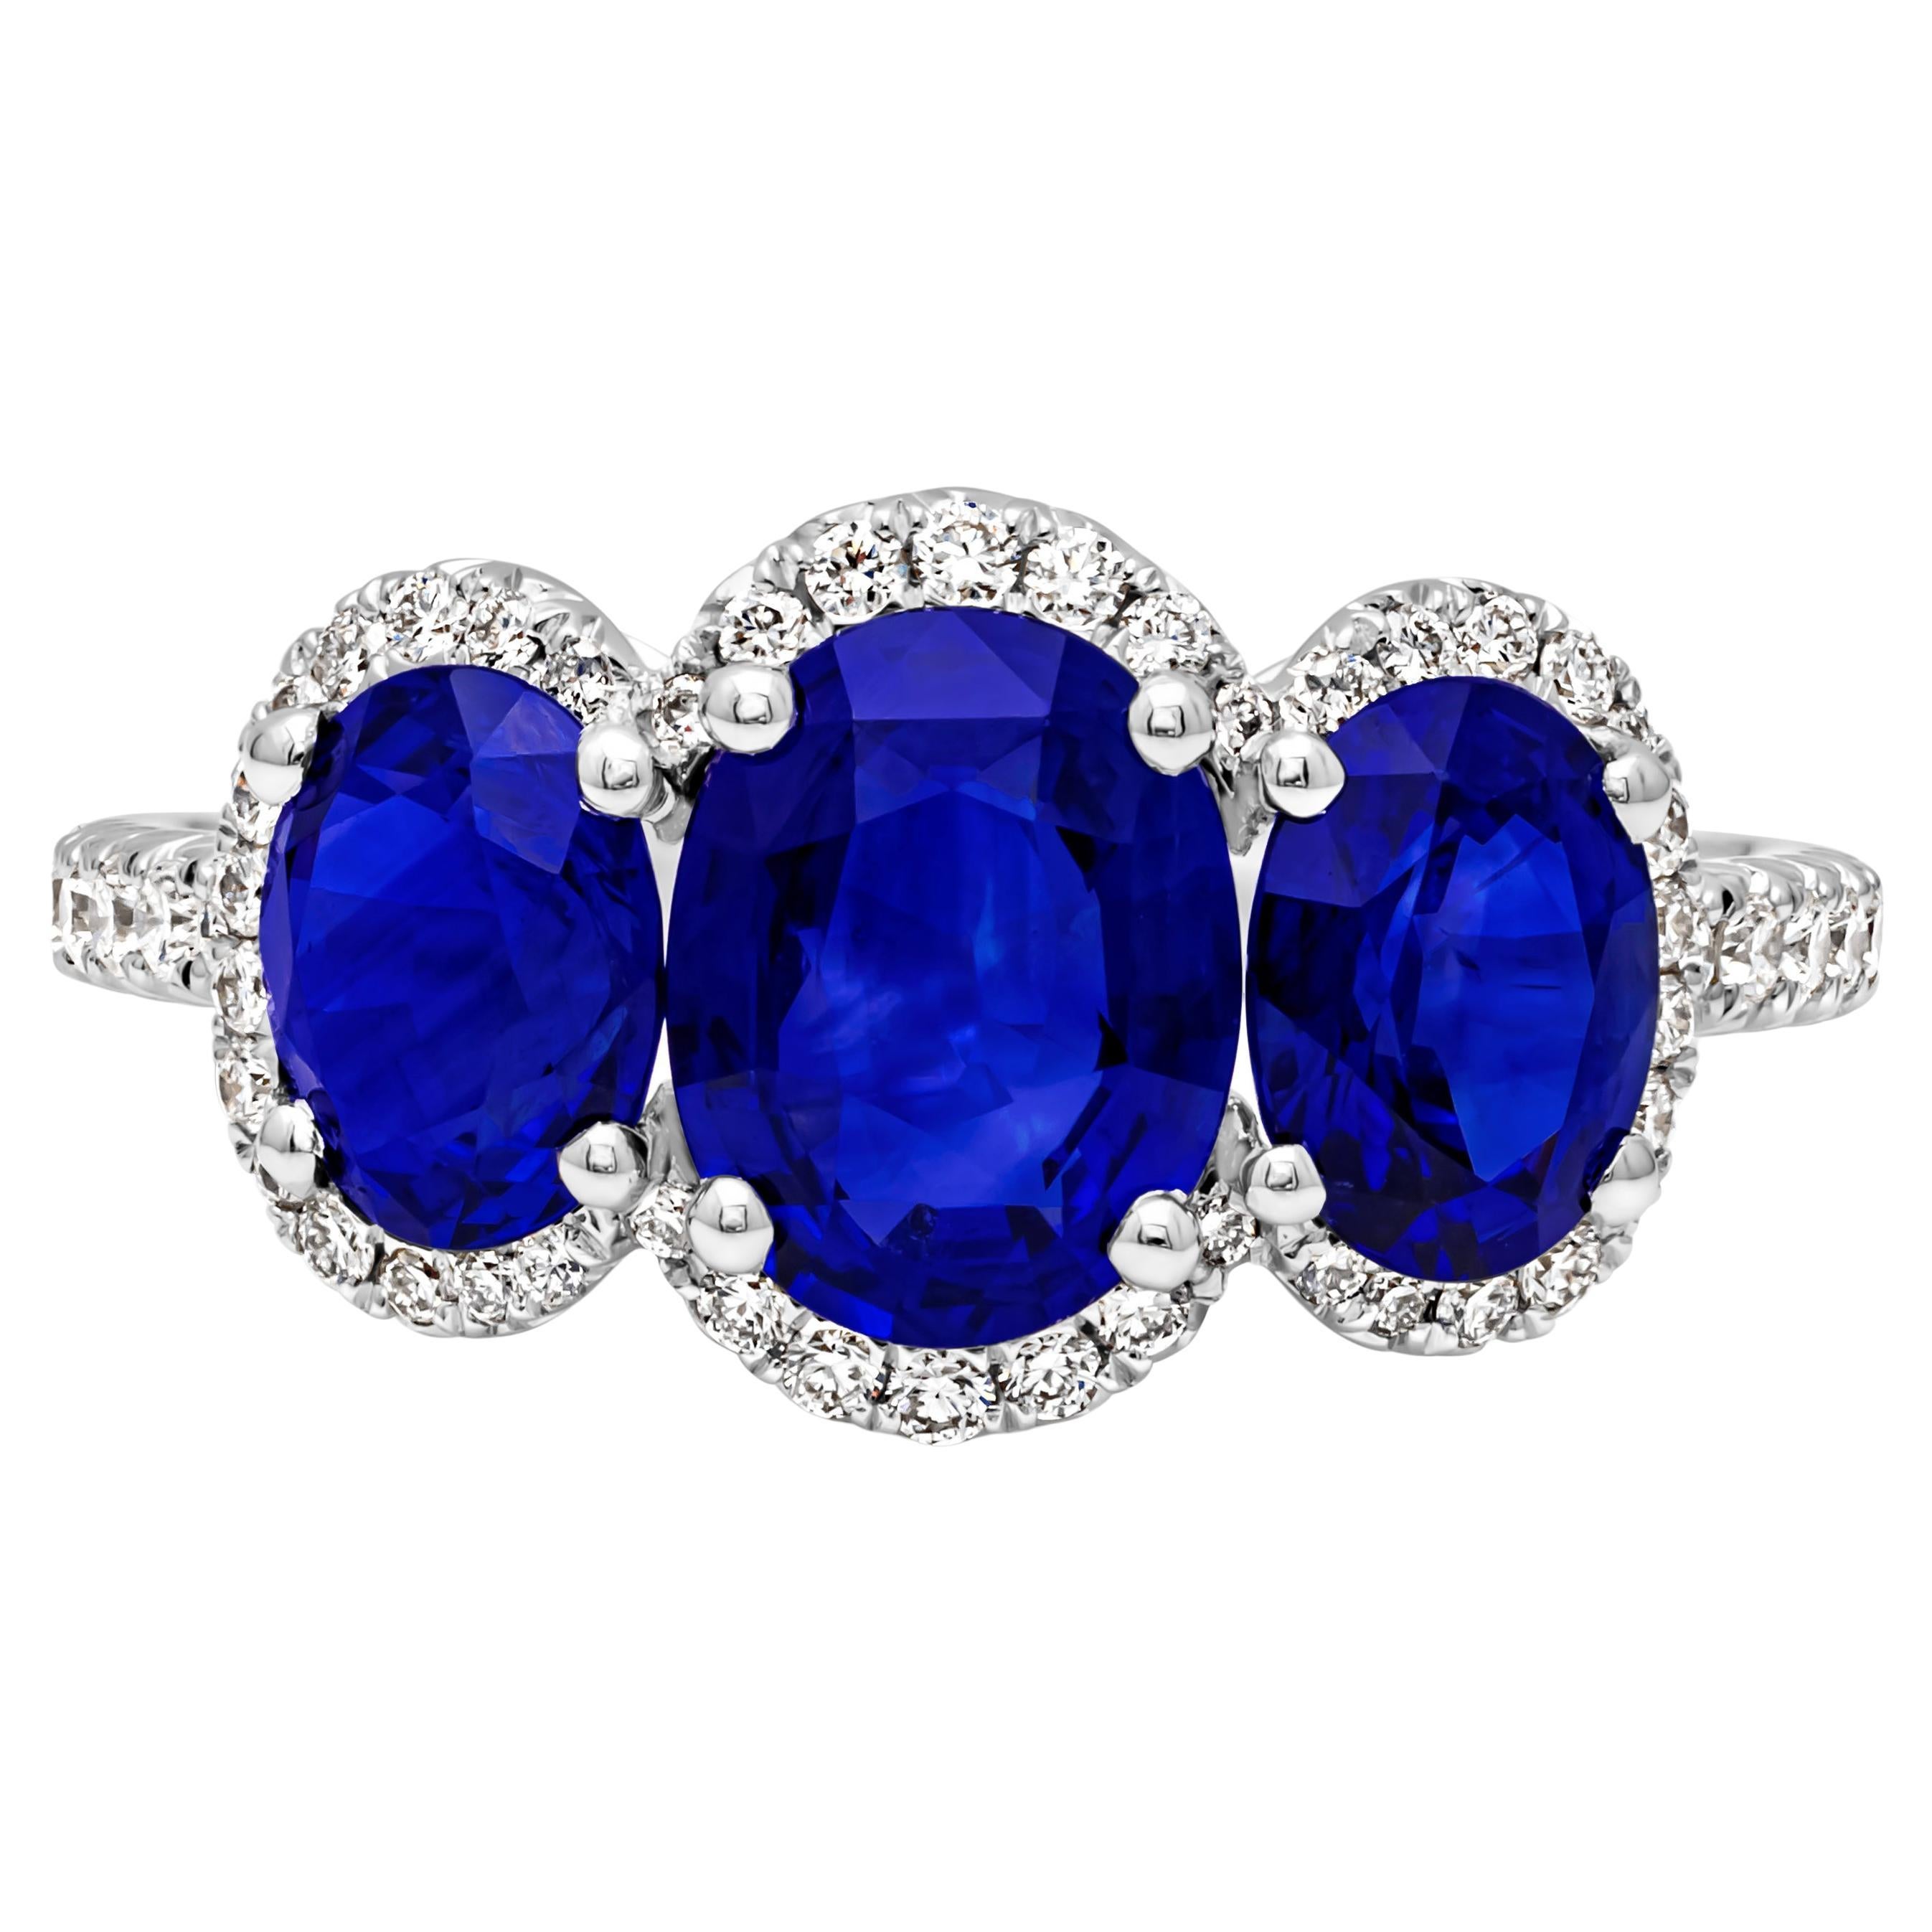 Verlobungsring mit drei Steinen, insgesamt 3,40 Karat blauem Saphir im Ovalschliff und Diamanten im Angebot